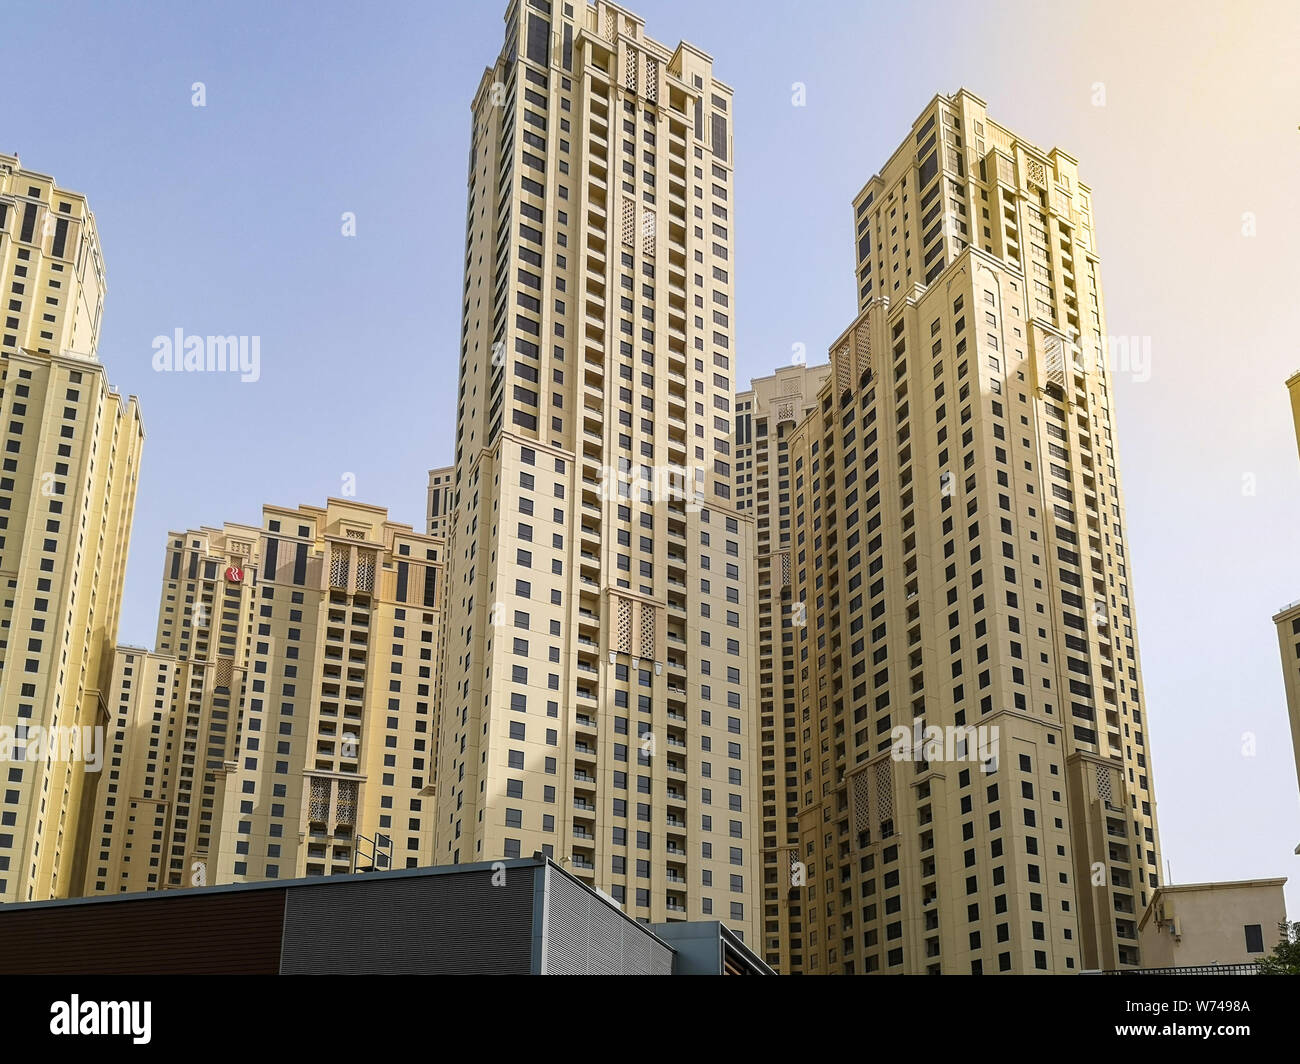 JBR, Jumeirah Beach Resort, eine neue touristische Attraktion Gegend mit Geschäften, Restaurants und Wohnungen Wolkenkratzer in Dubai, Vereinigte Arabische Emirate Stockfoto